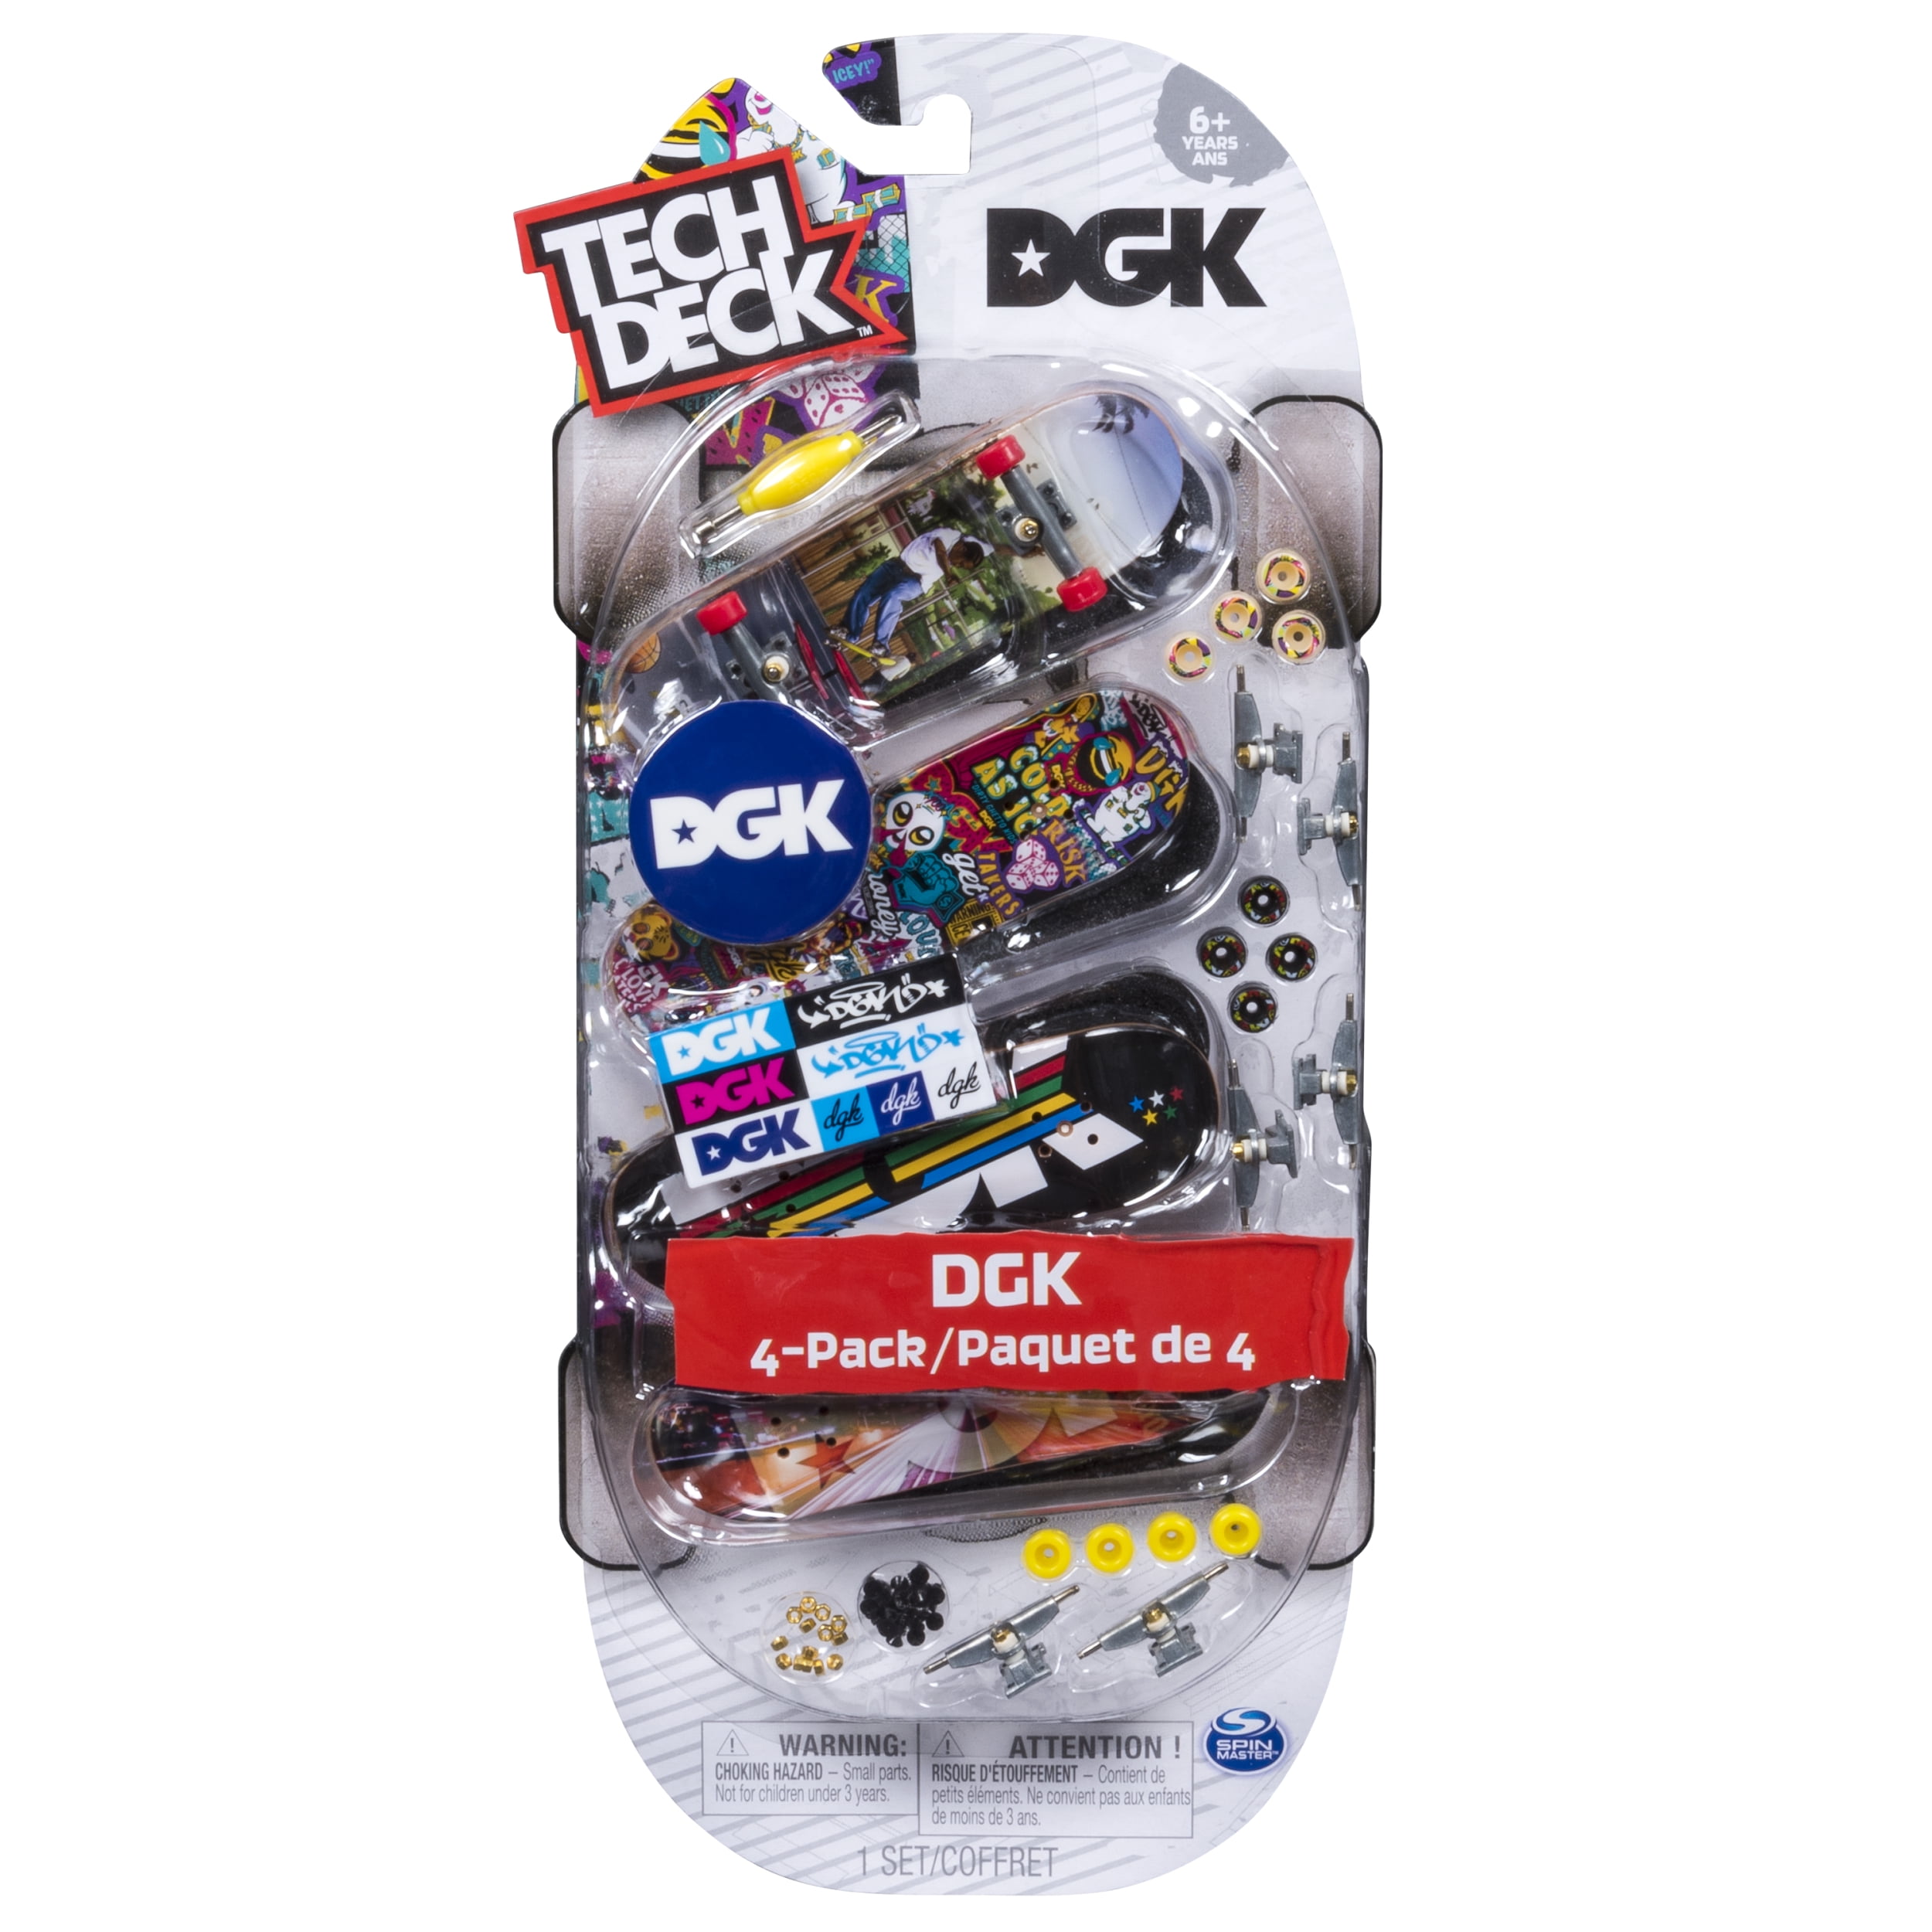 Tech Deck - 96mm Fingerboards - 4-Pack - DGK - Walmart.com ...